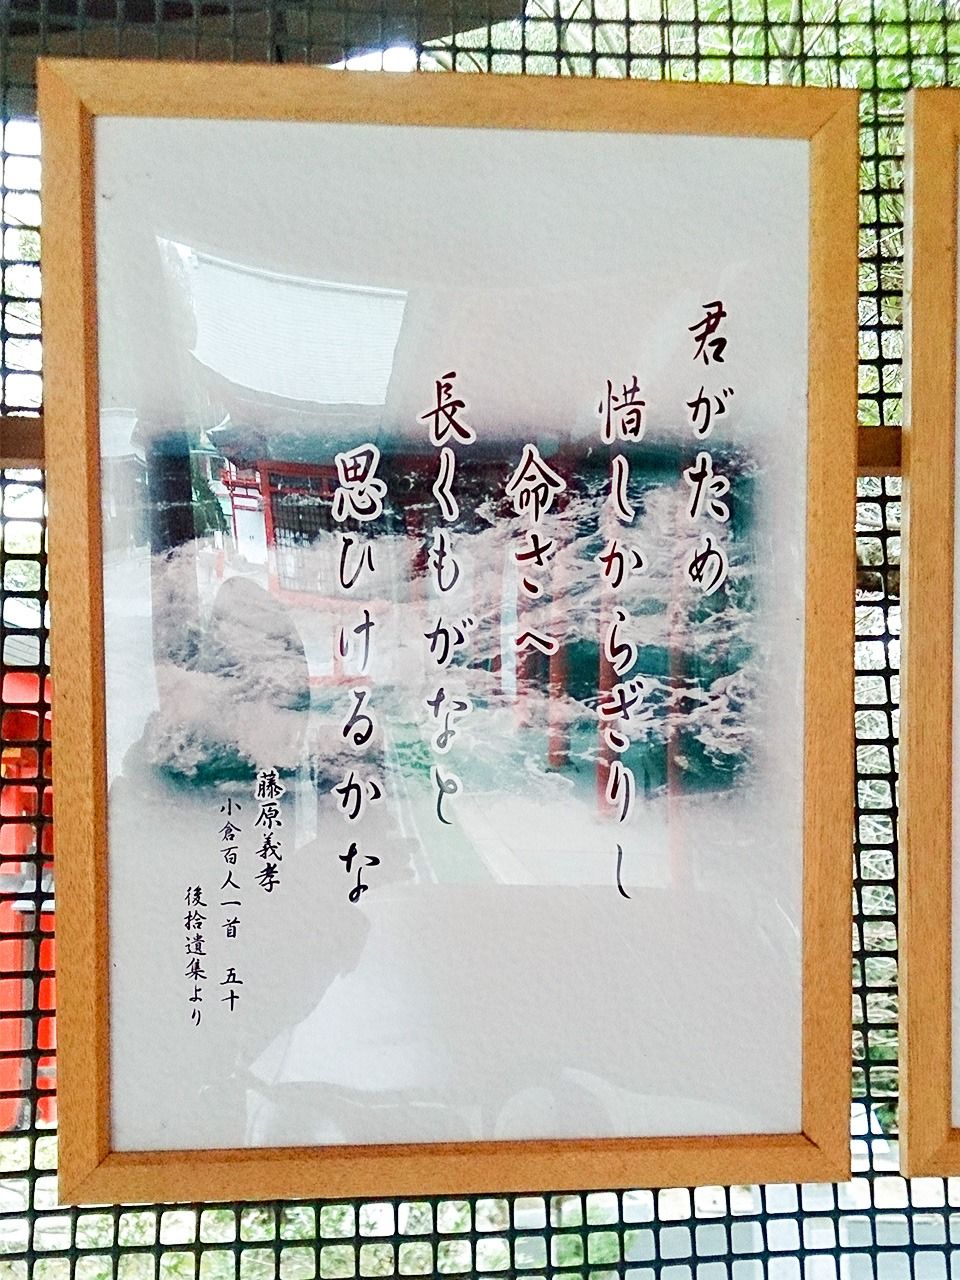 القصيدة 50 لفوجيوارا نو يوشيتاكا معروضة في معبد أومي.